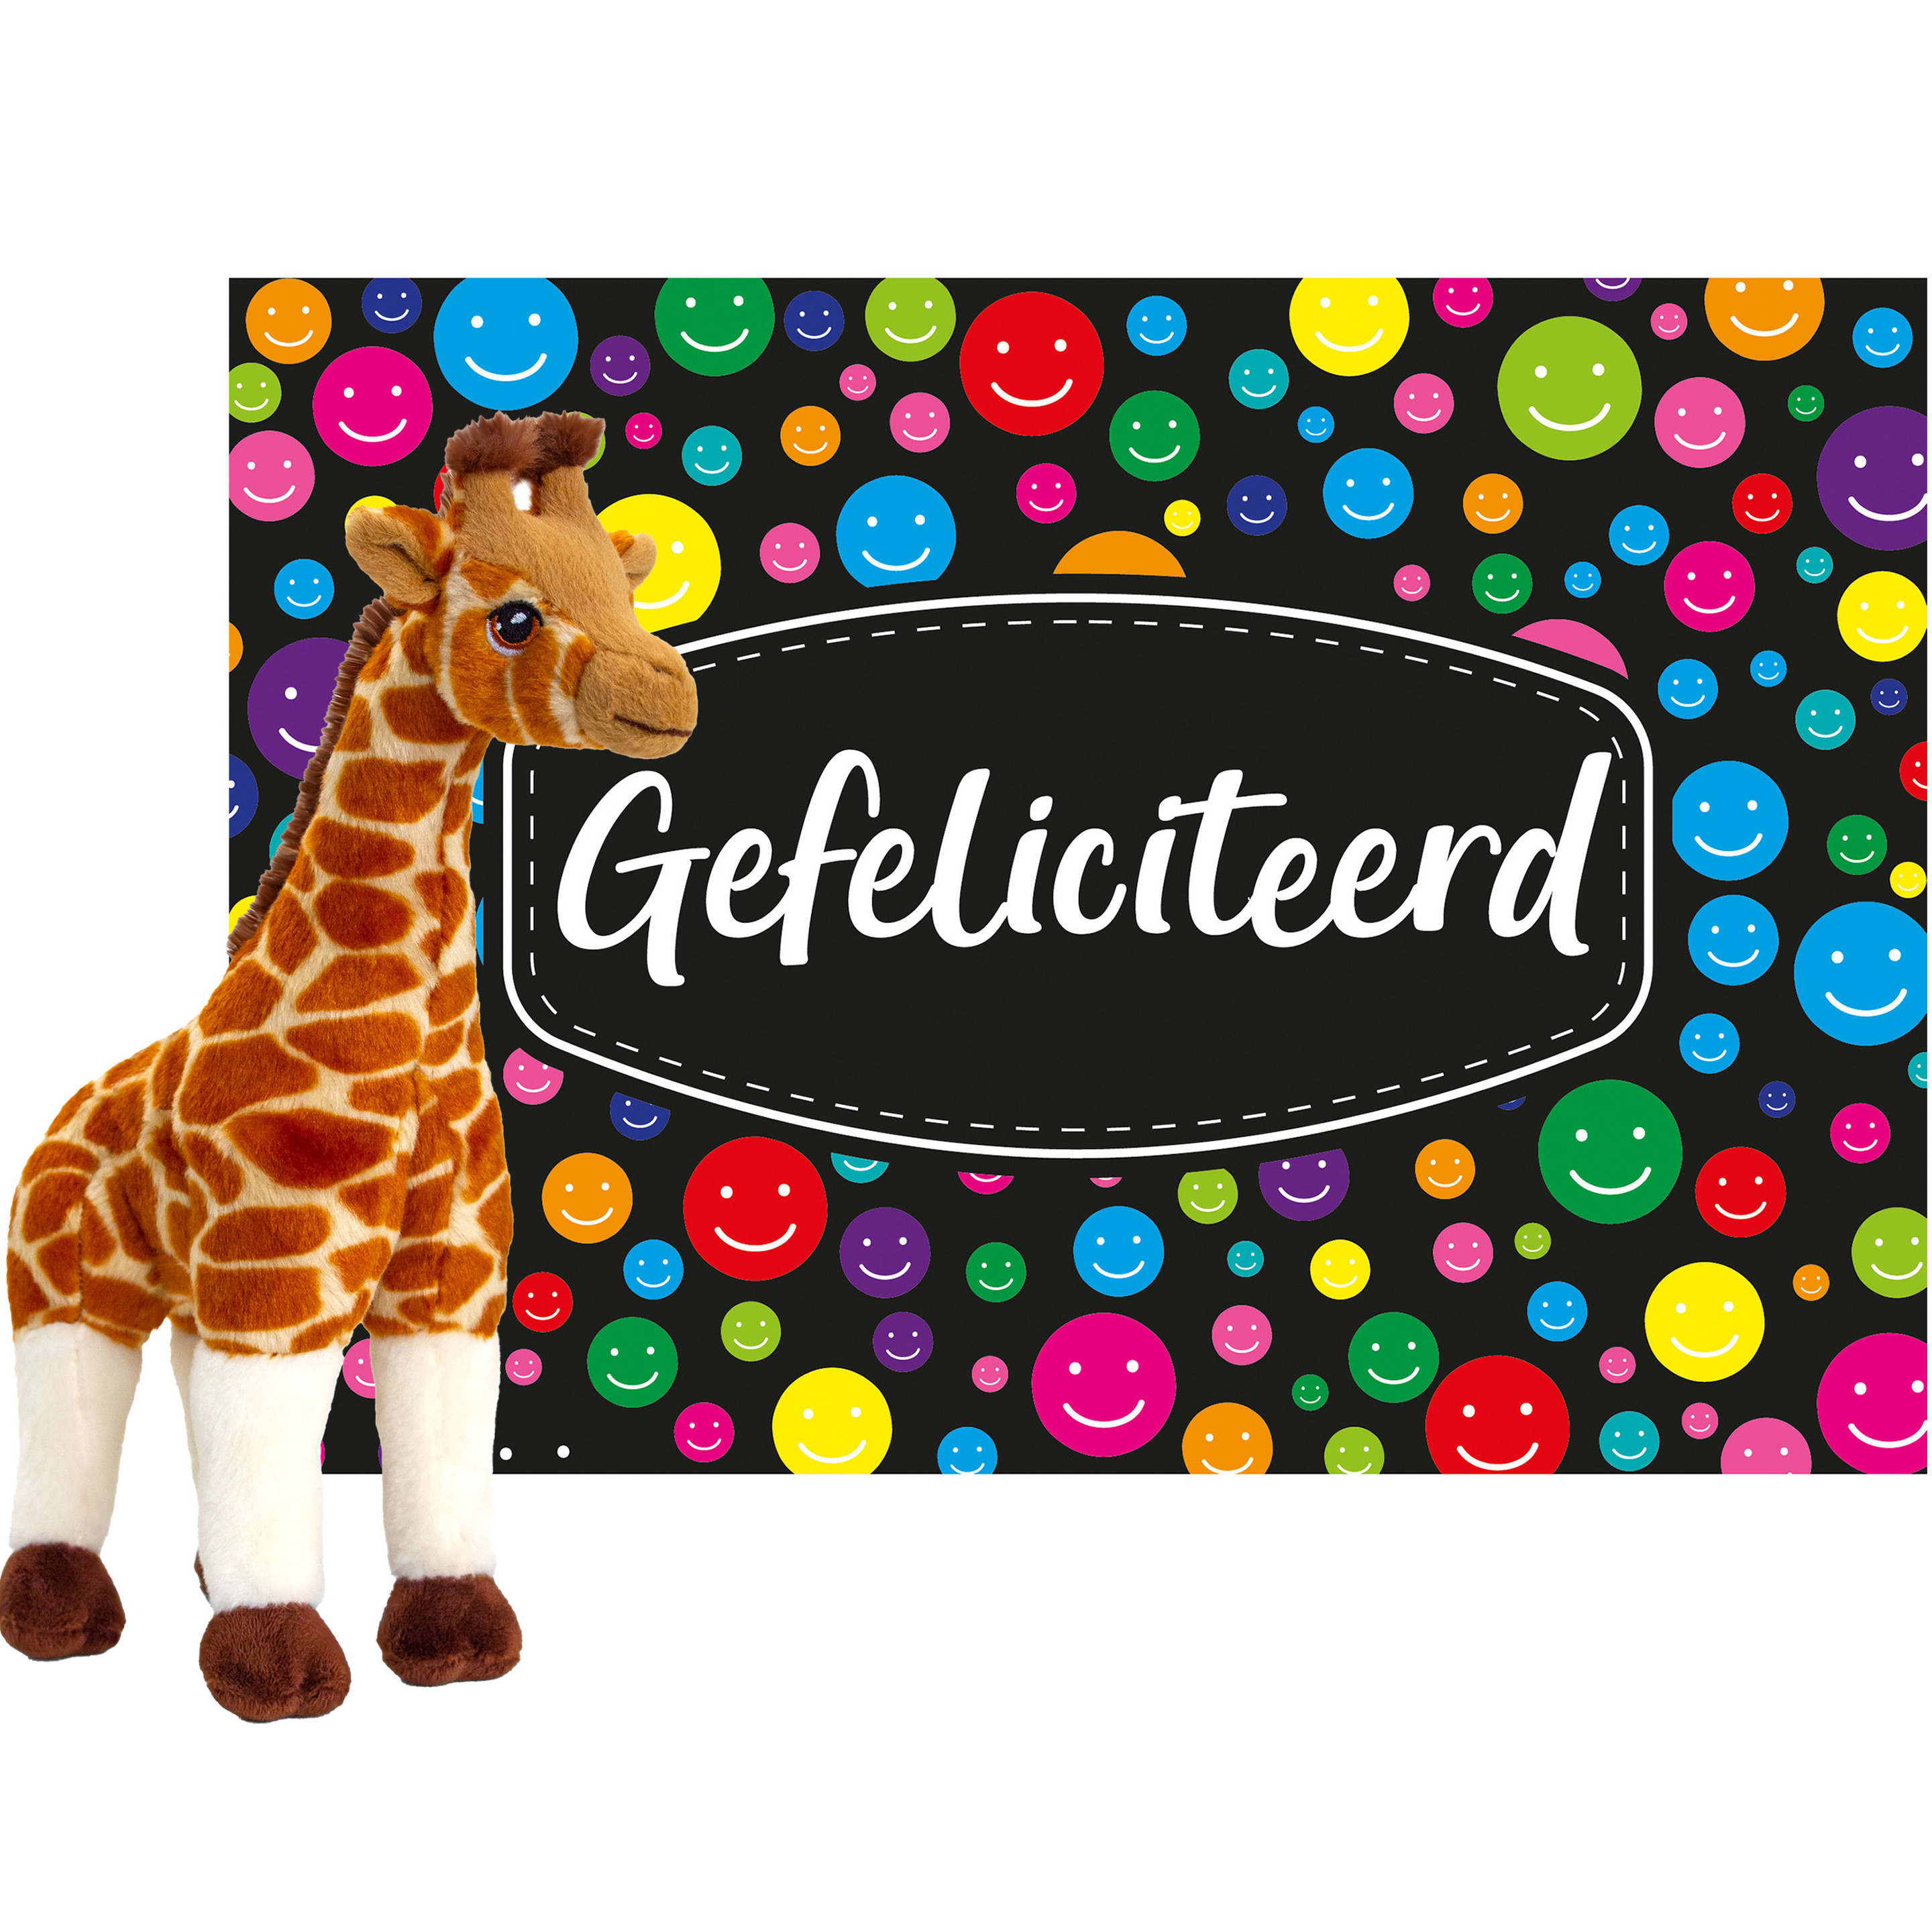 Keel toys Cadeaukaart Gefeliciteerd met knuffeldier giraffe 30 cm